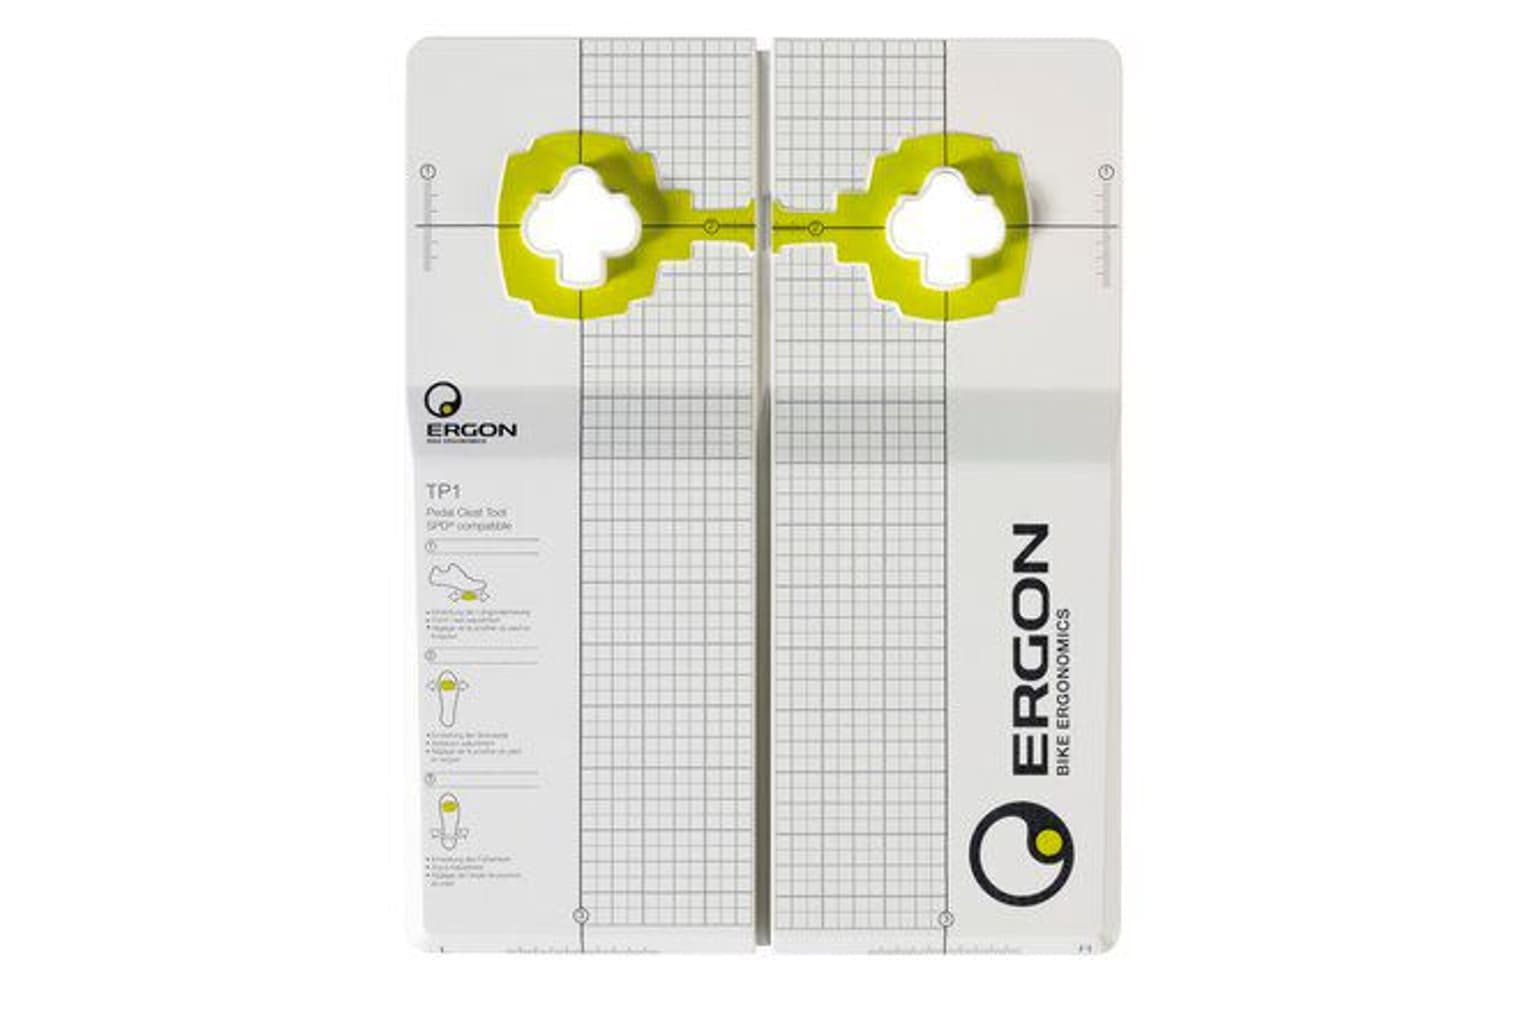 Ergon Ergon Pedal Cleat Tool TP-1 für SPD Schuhplatten 1